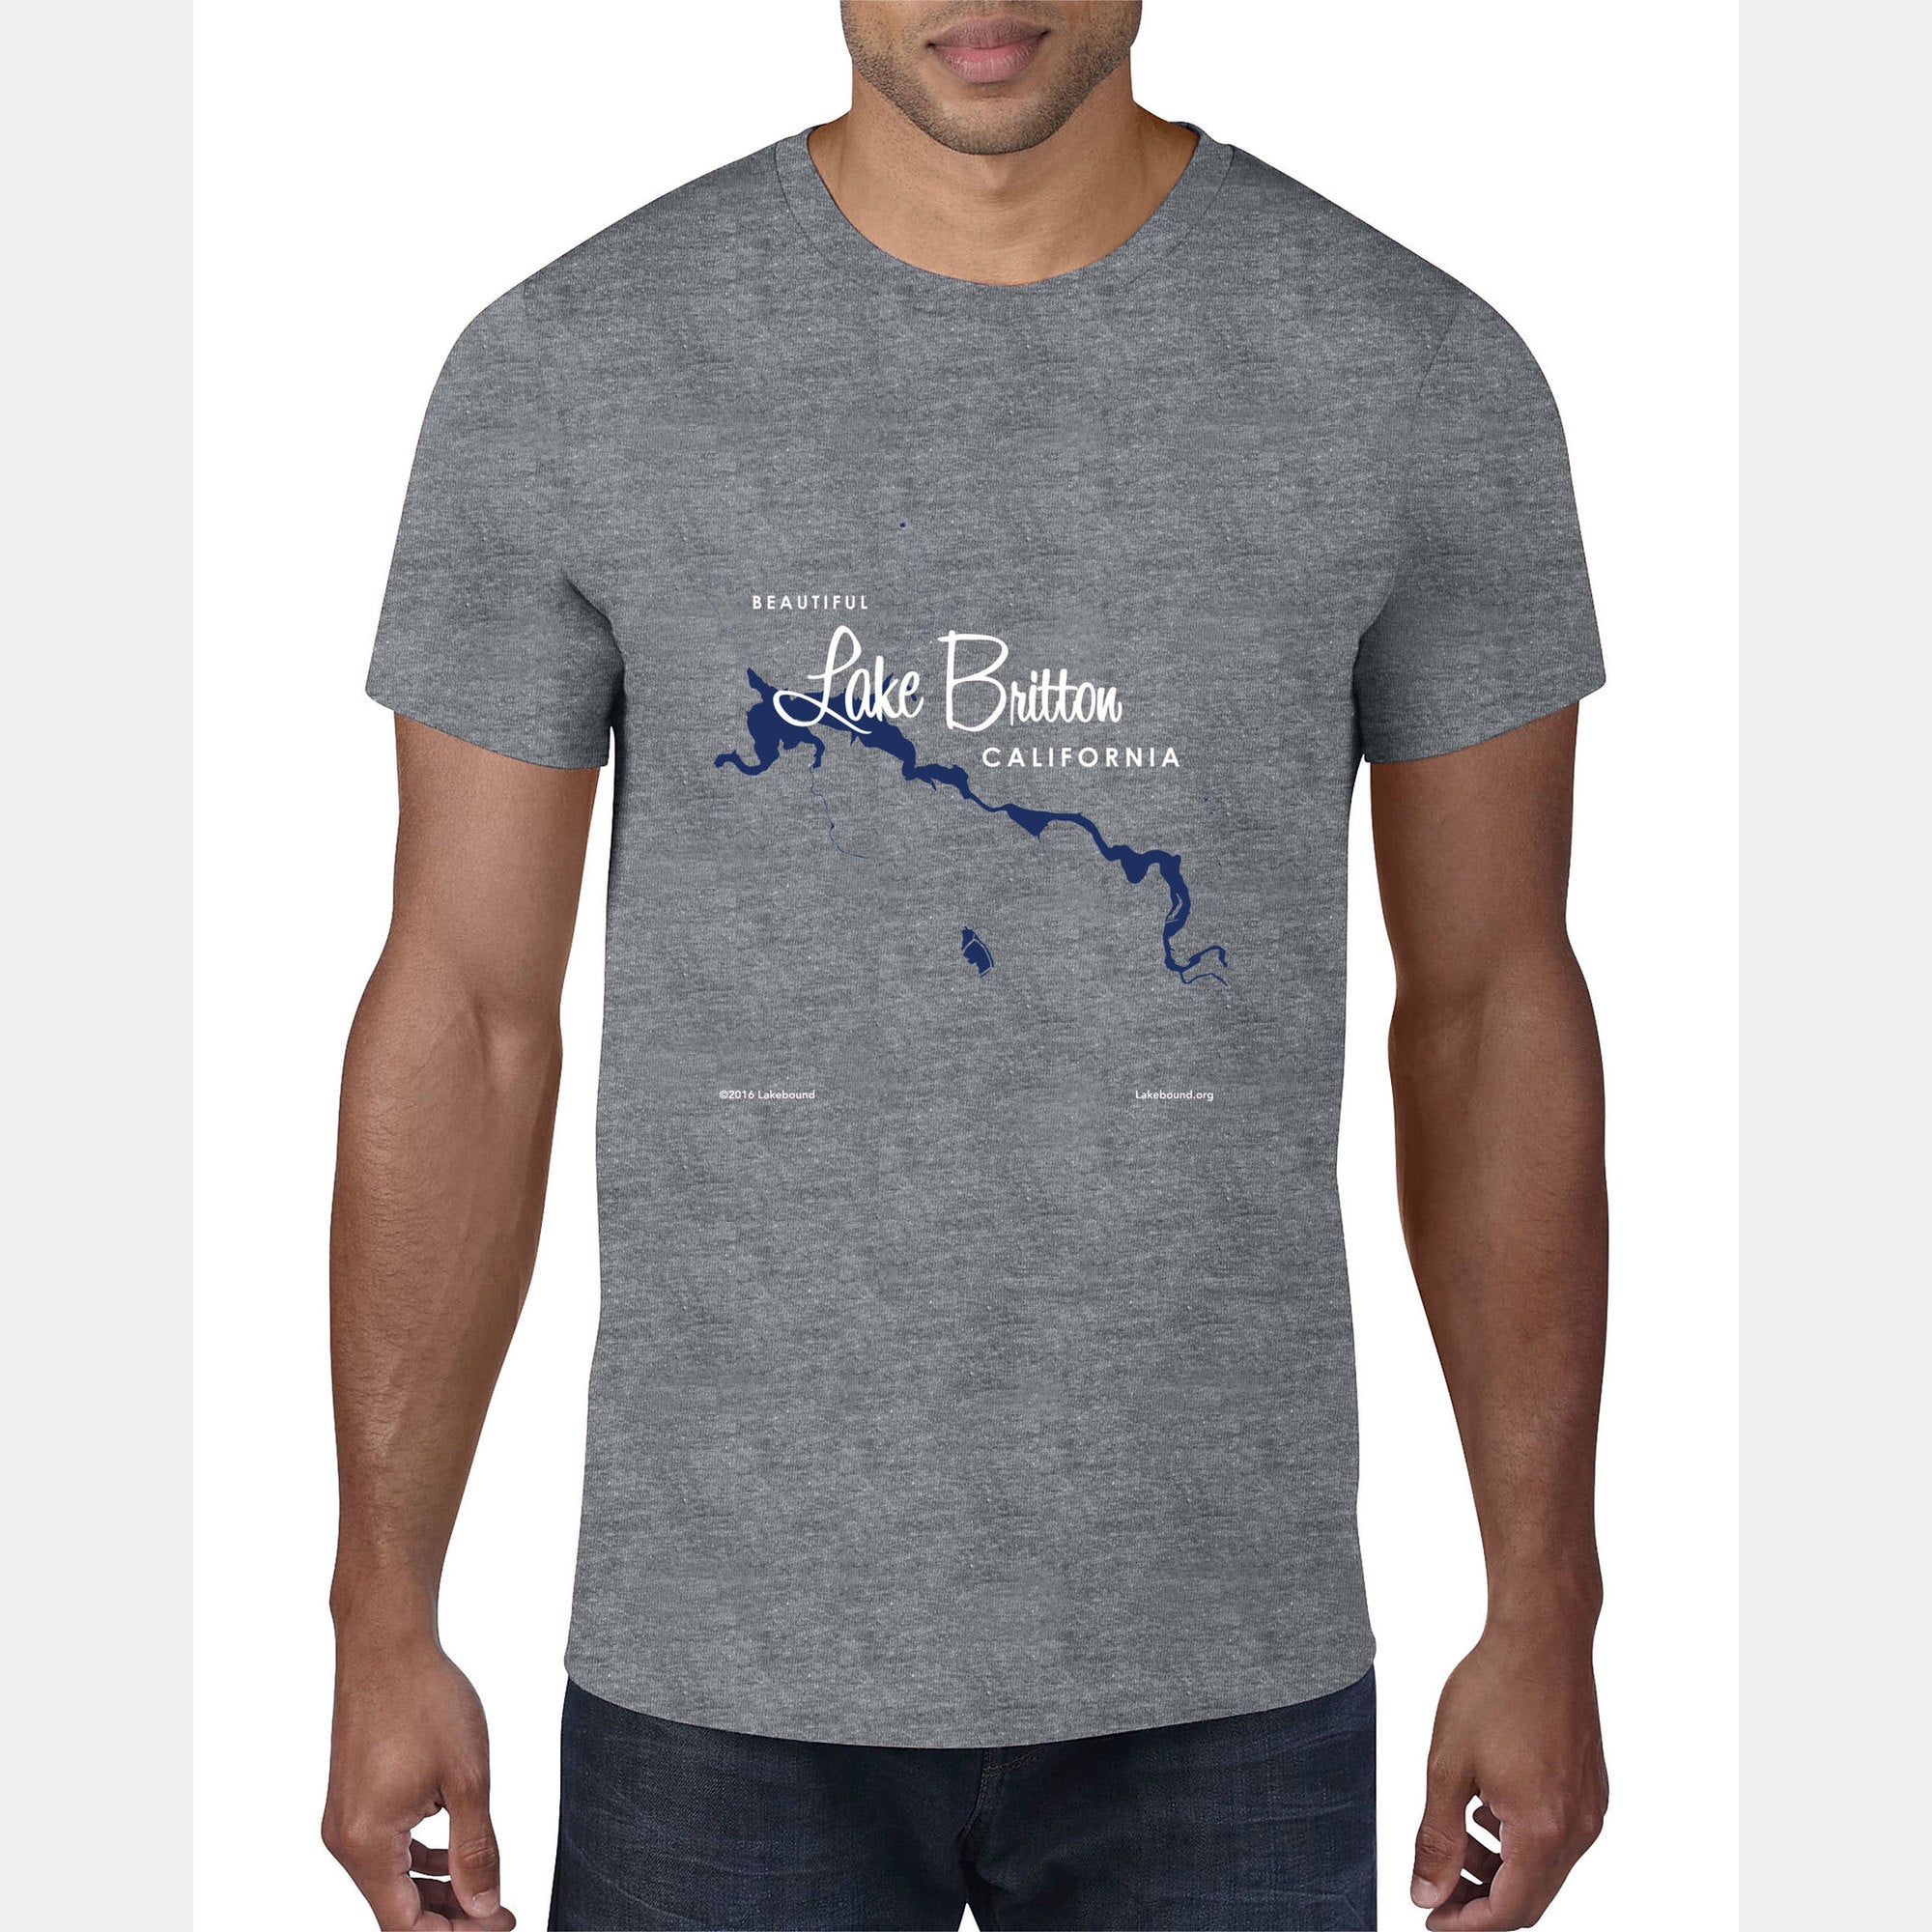 Lake Britton California, T-Shirt